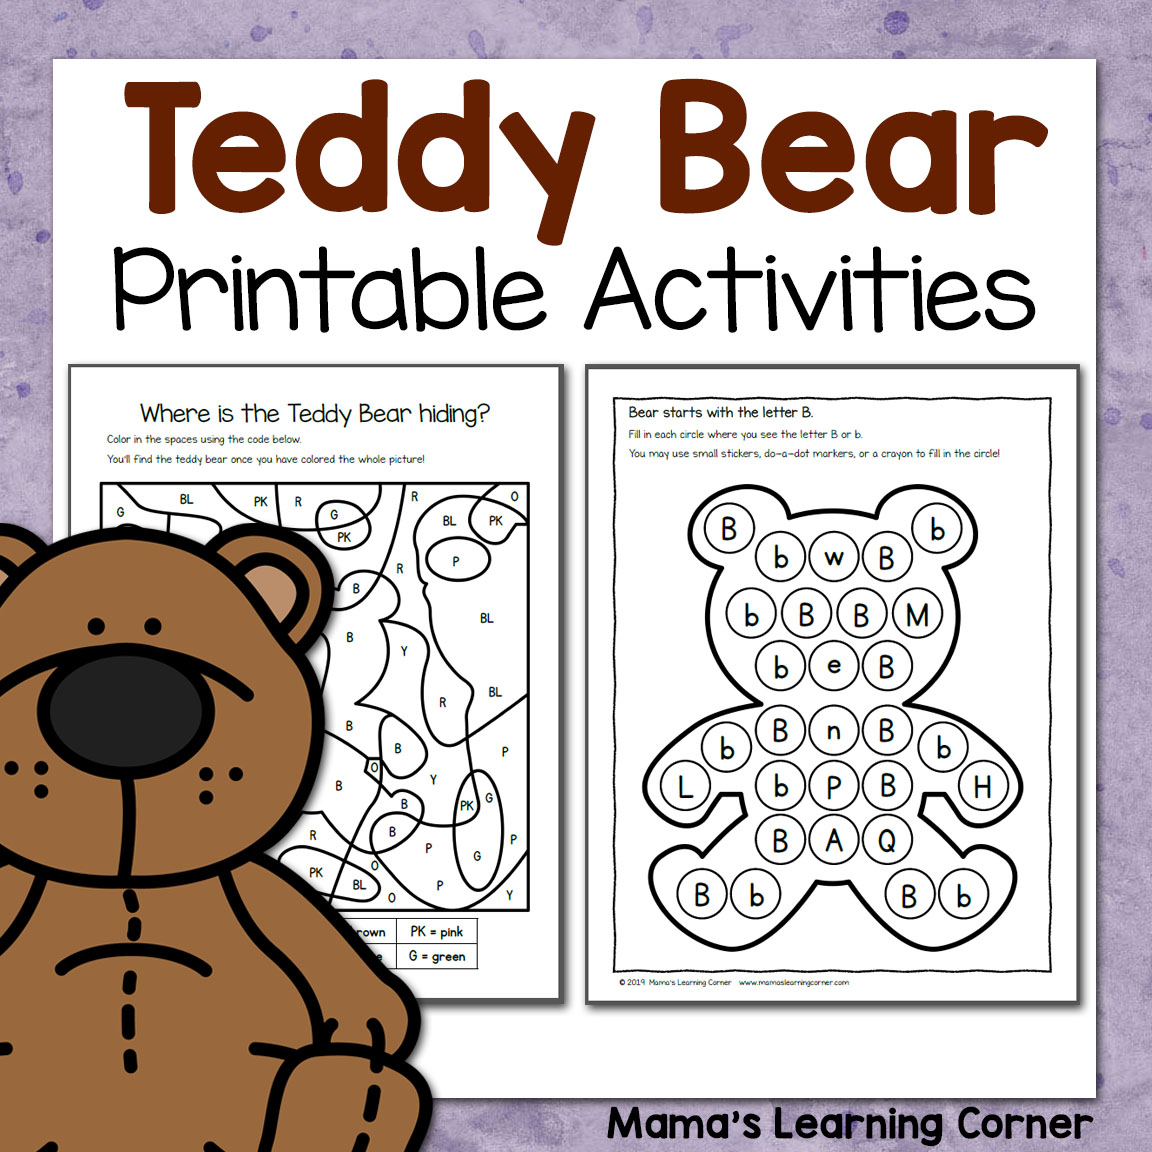 Teddy Bear Printable Activities